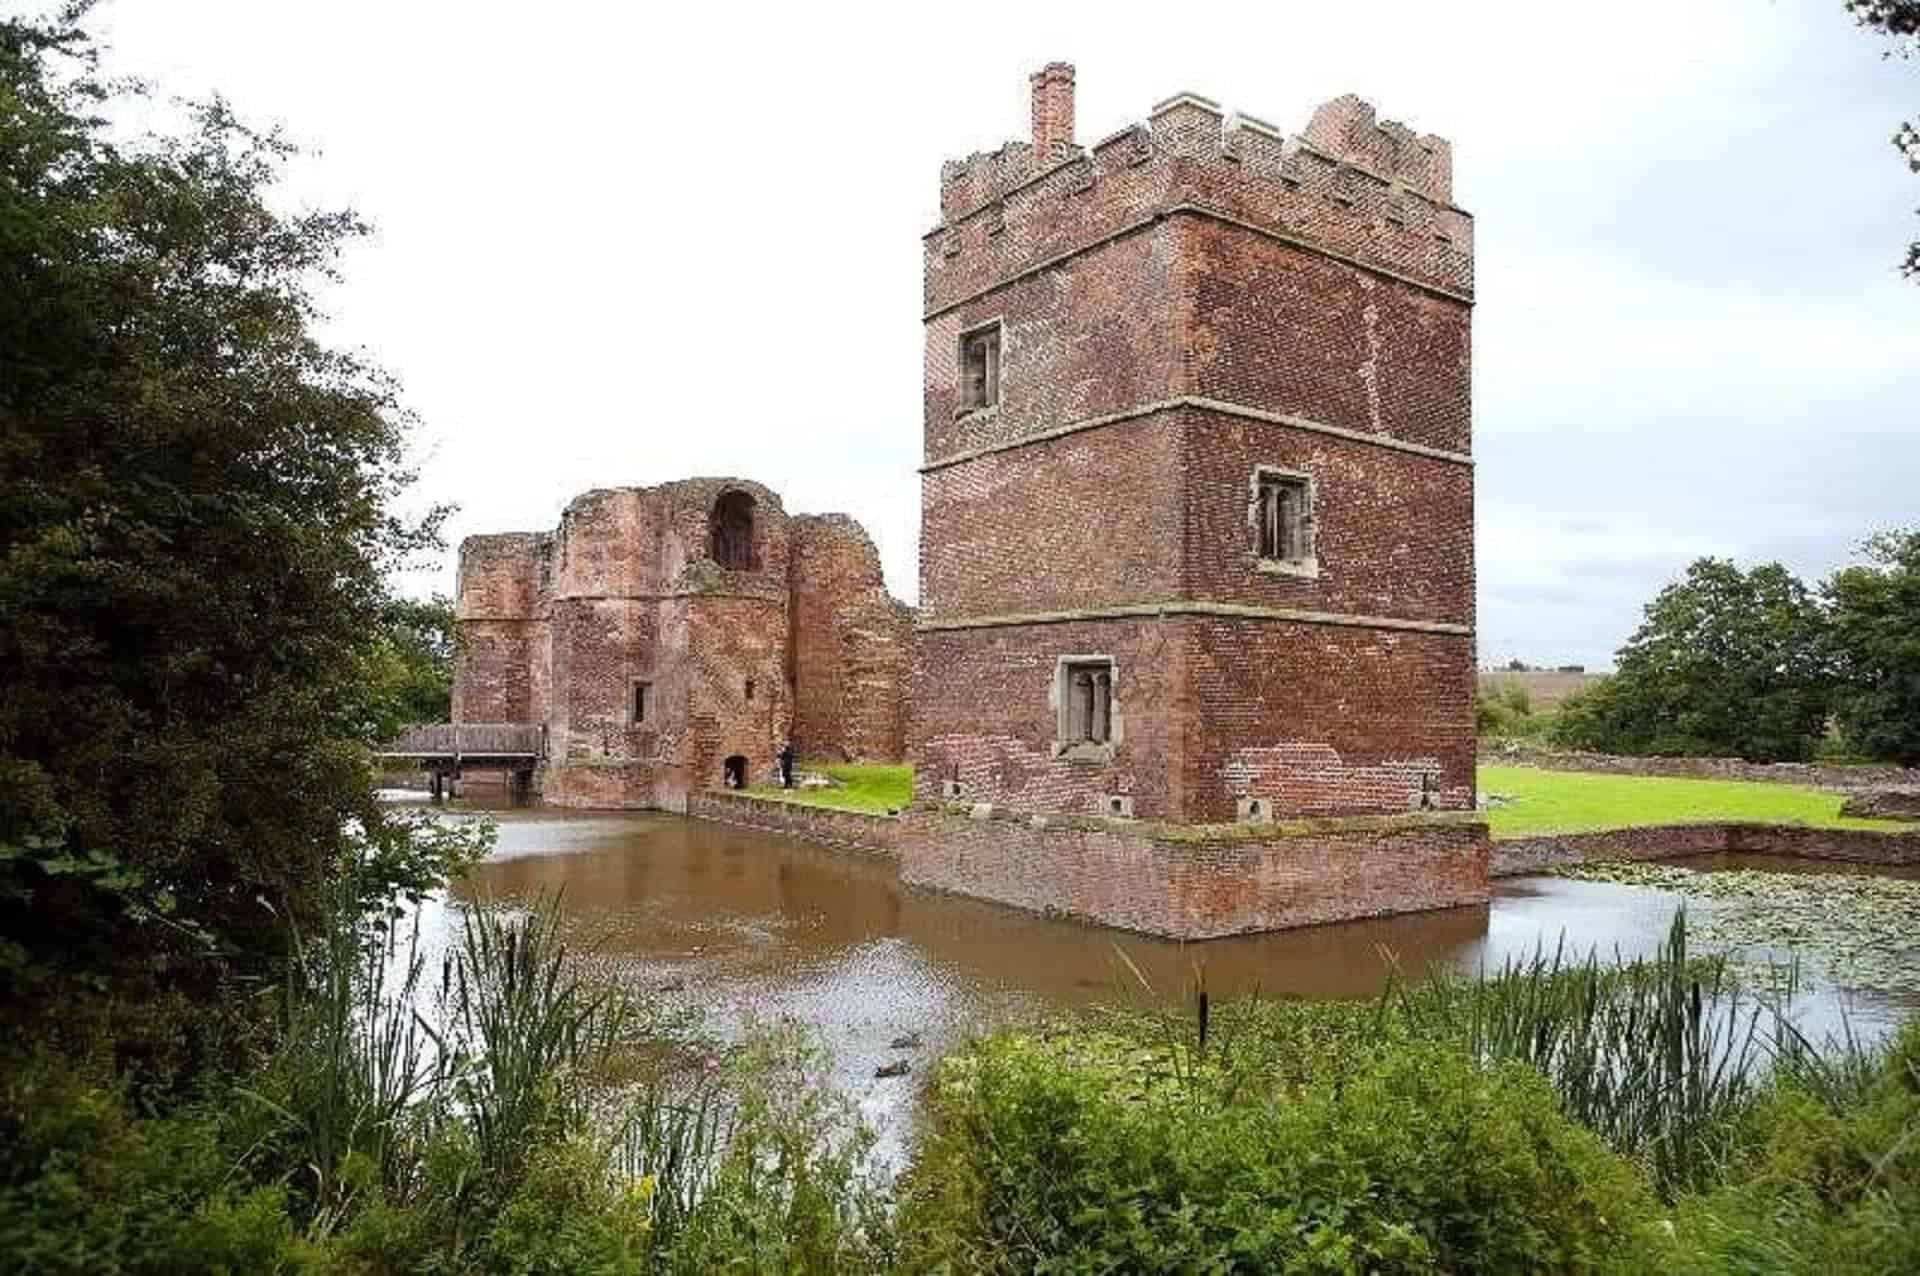 Kirby Muxloe Castle in UK